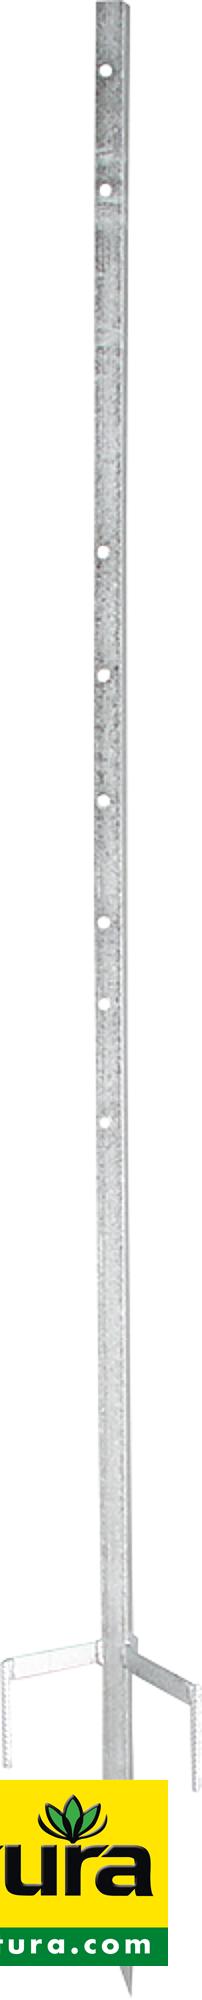 Metalleckpfahl Super, für mobile Zäune bis 1,30 m Höhe